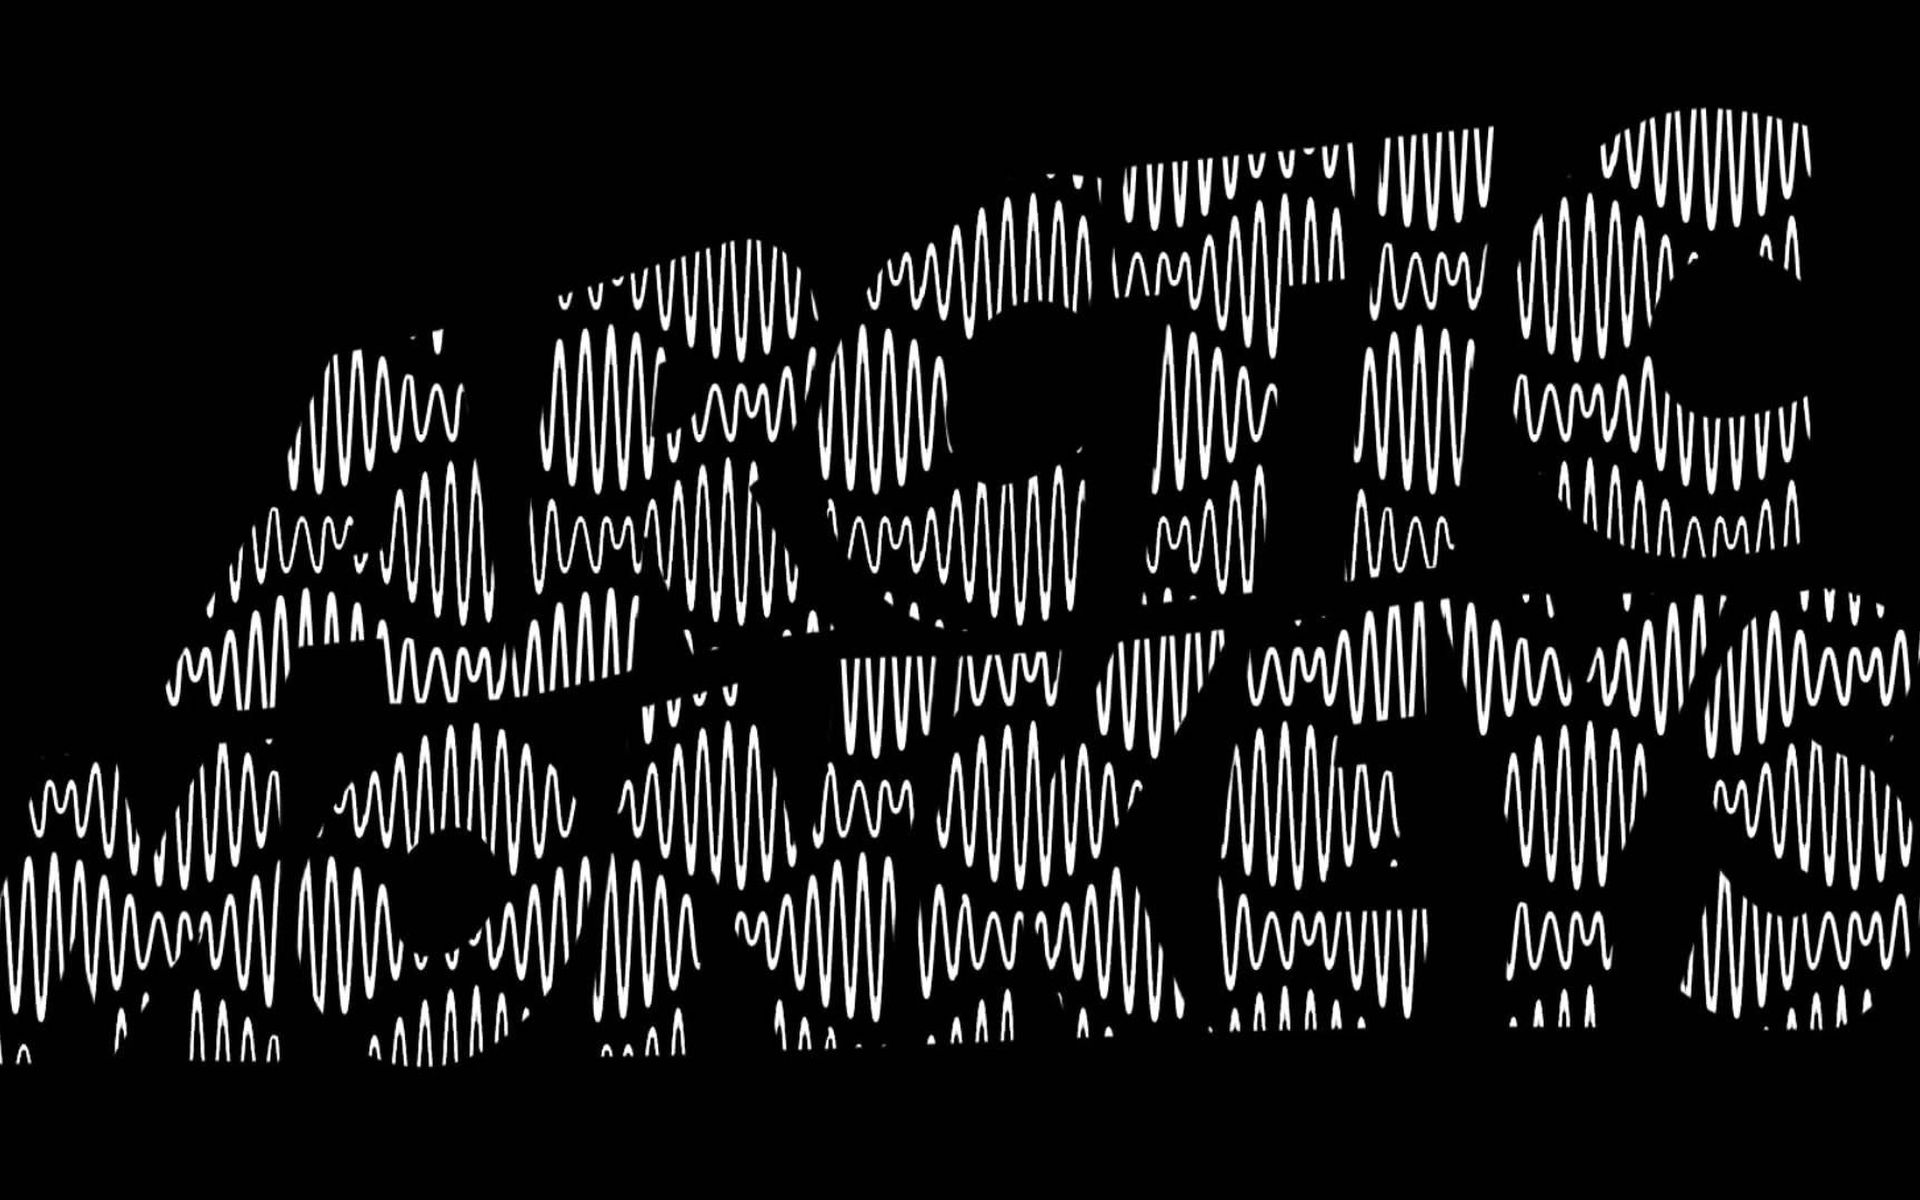 scimmie artiche wallpaper hd,nero,font,testo,bianco e nero,buio